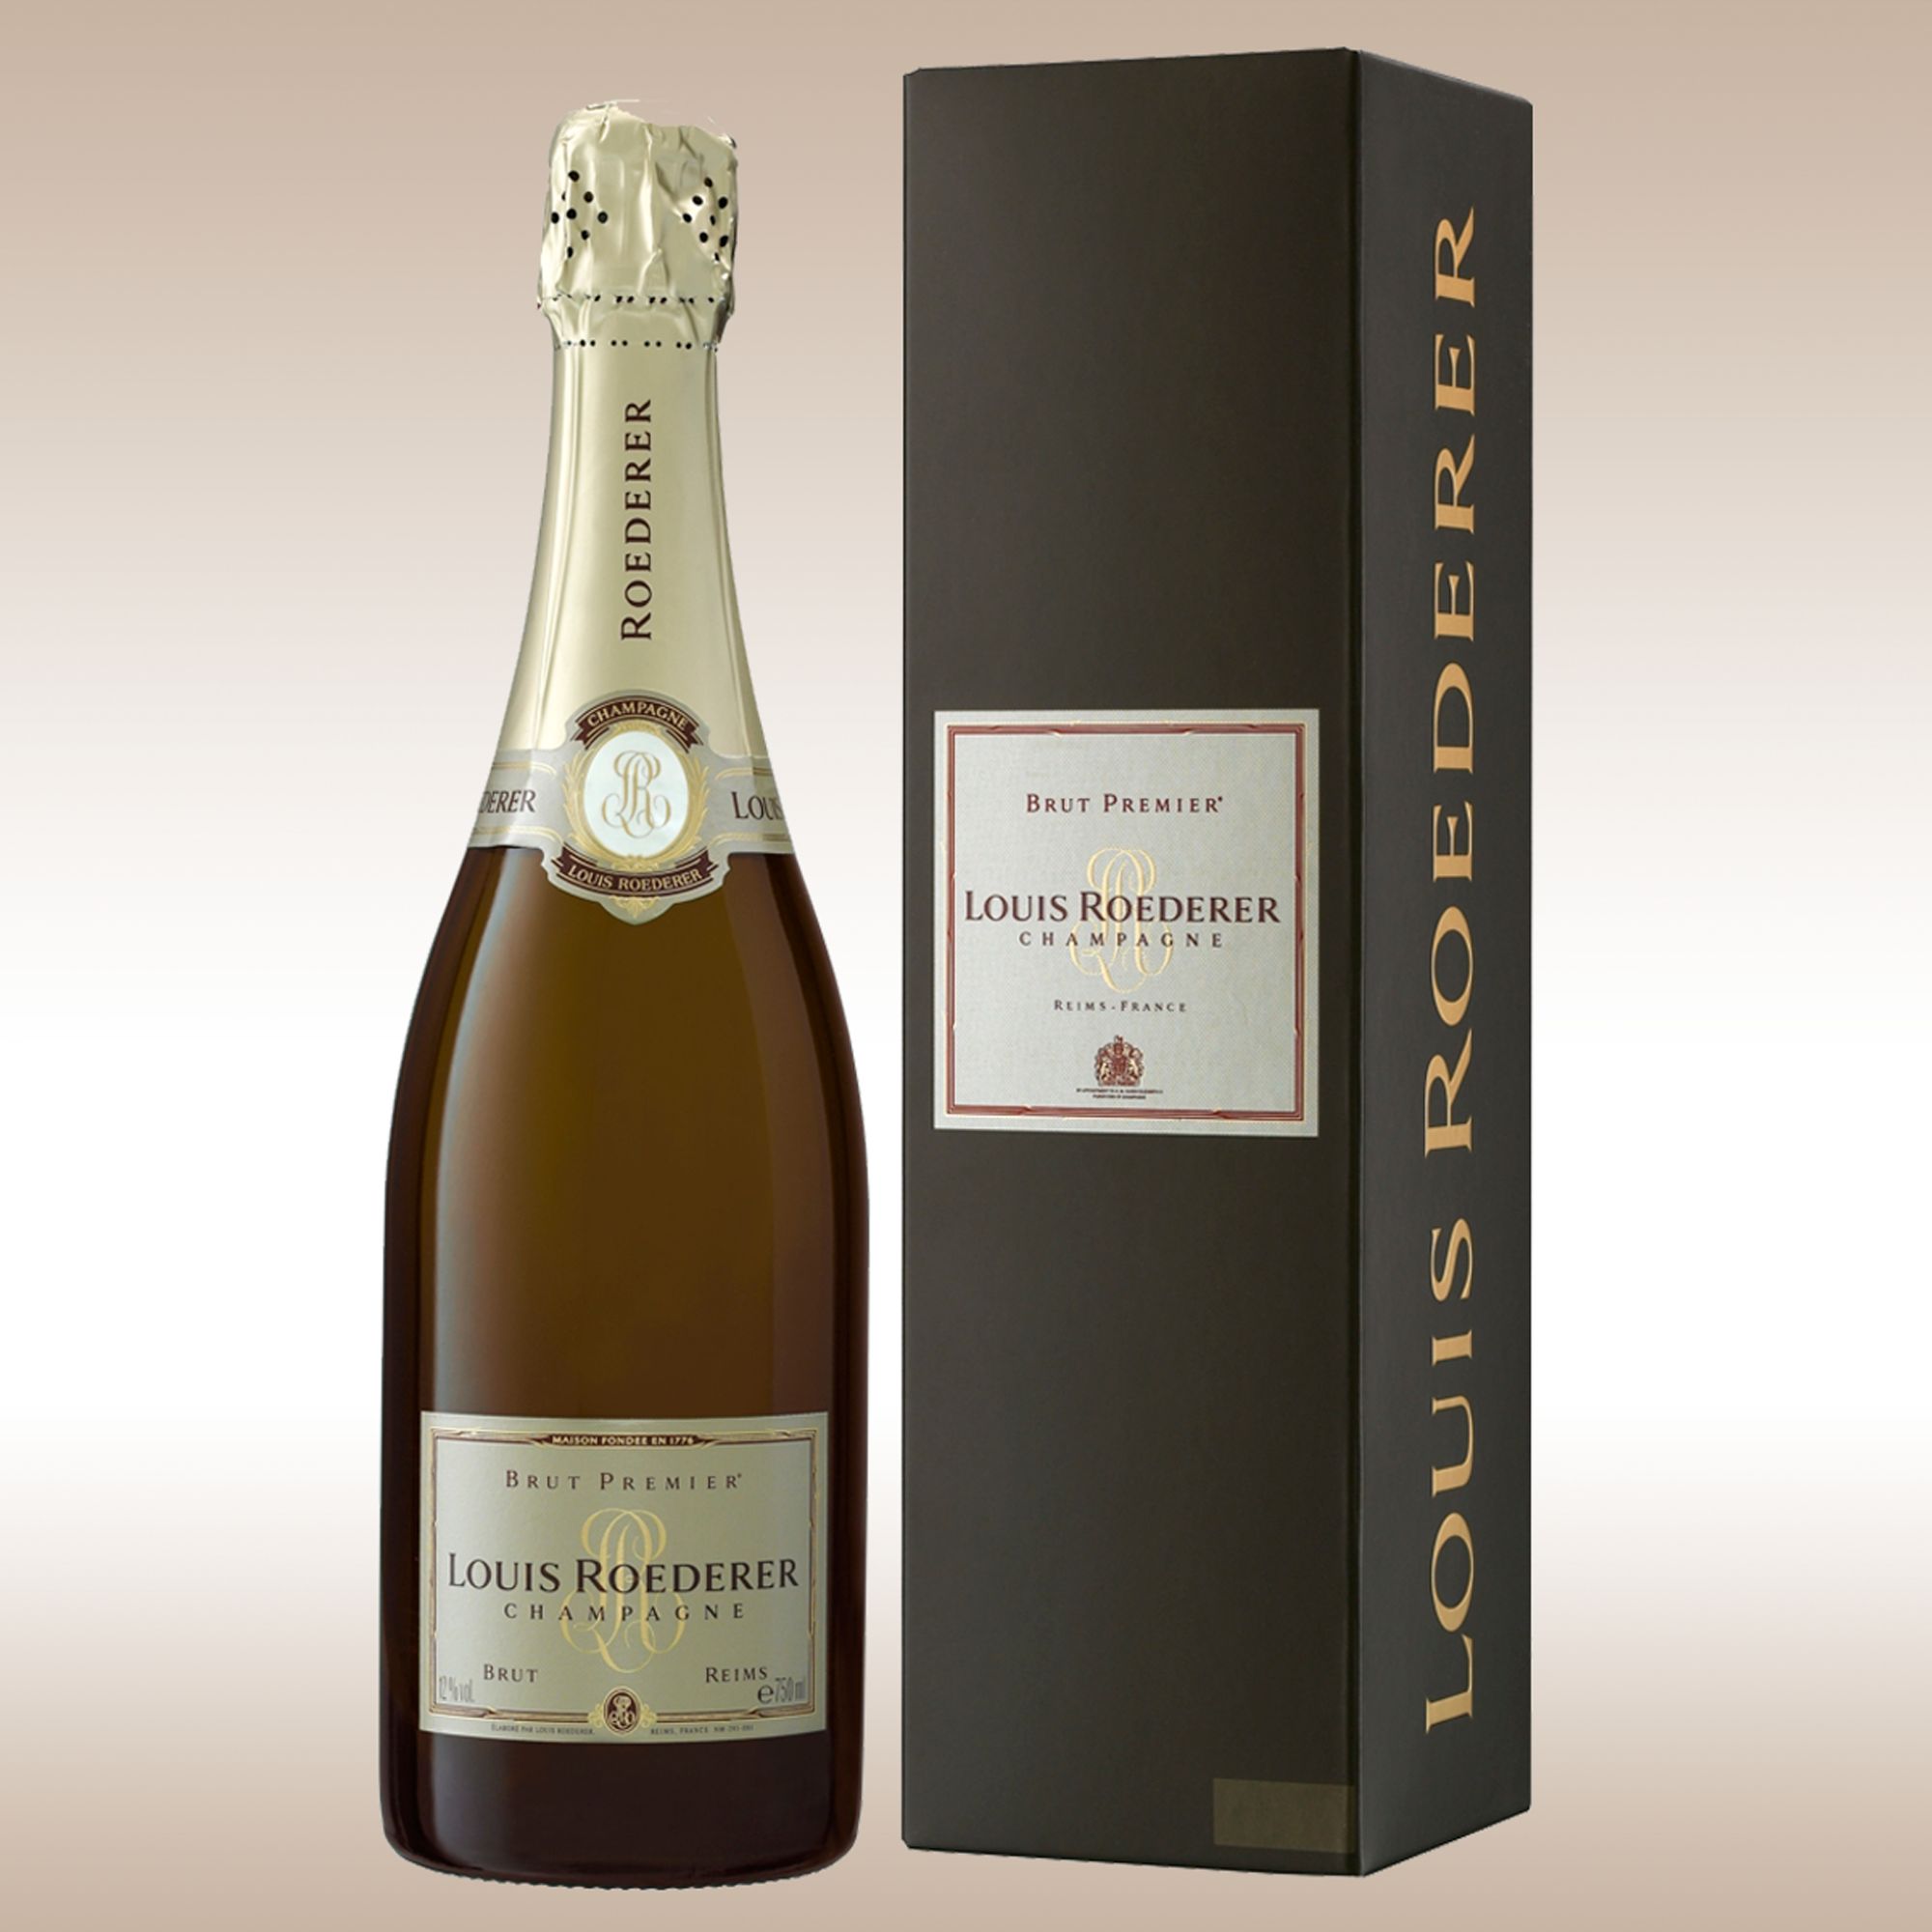 Louis Roederer Brut Premier NV Champagne, France at JohnLewis